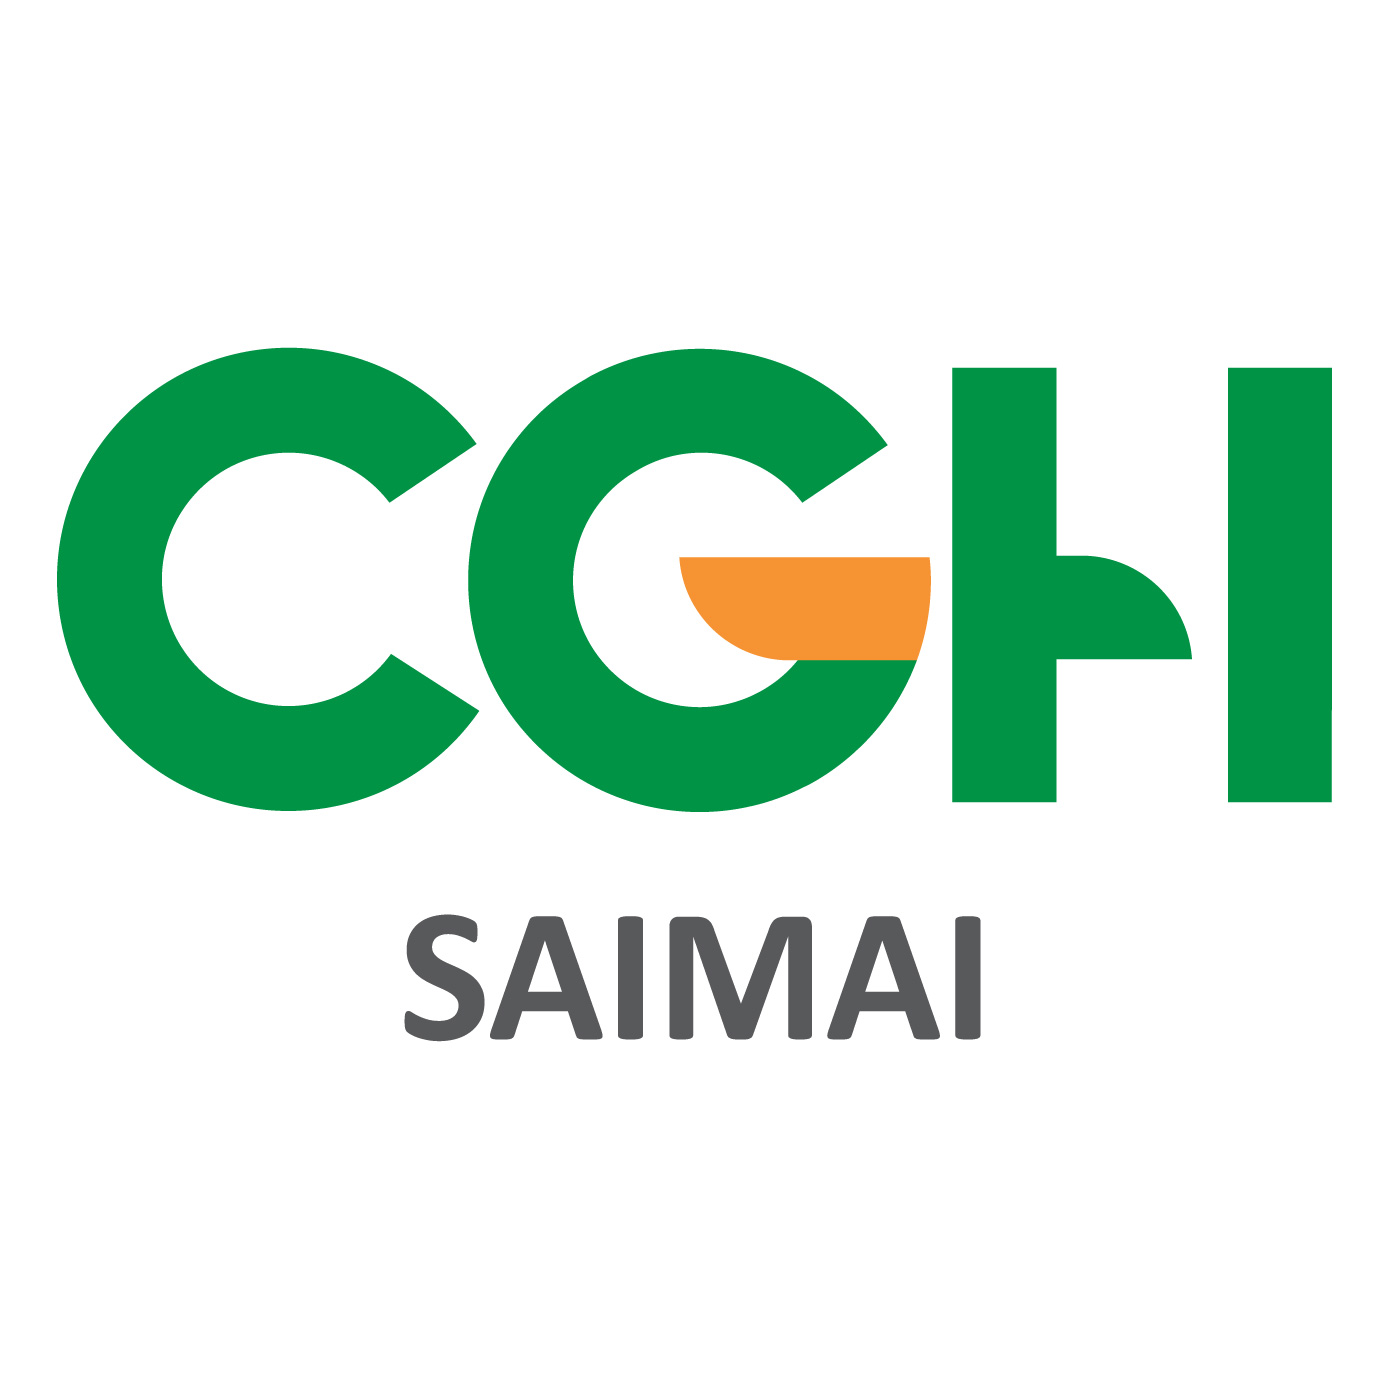 Cgh Hospital Saimai 01